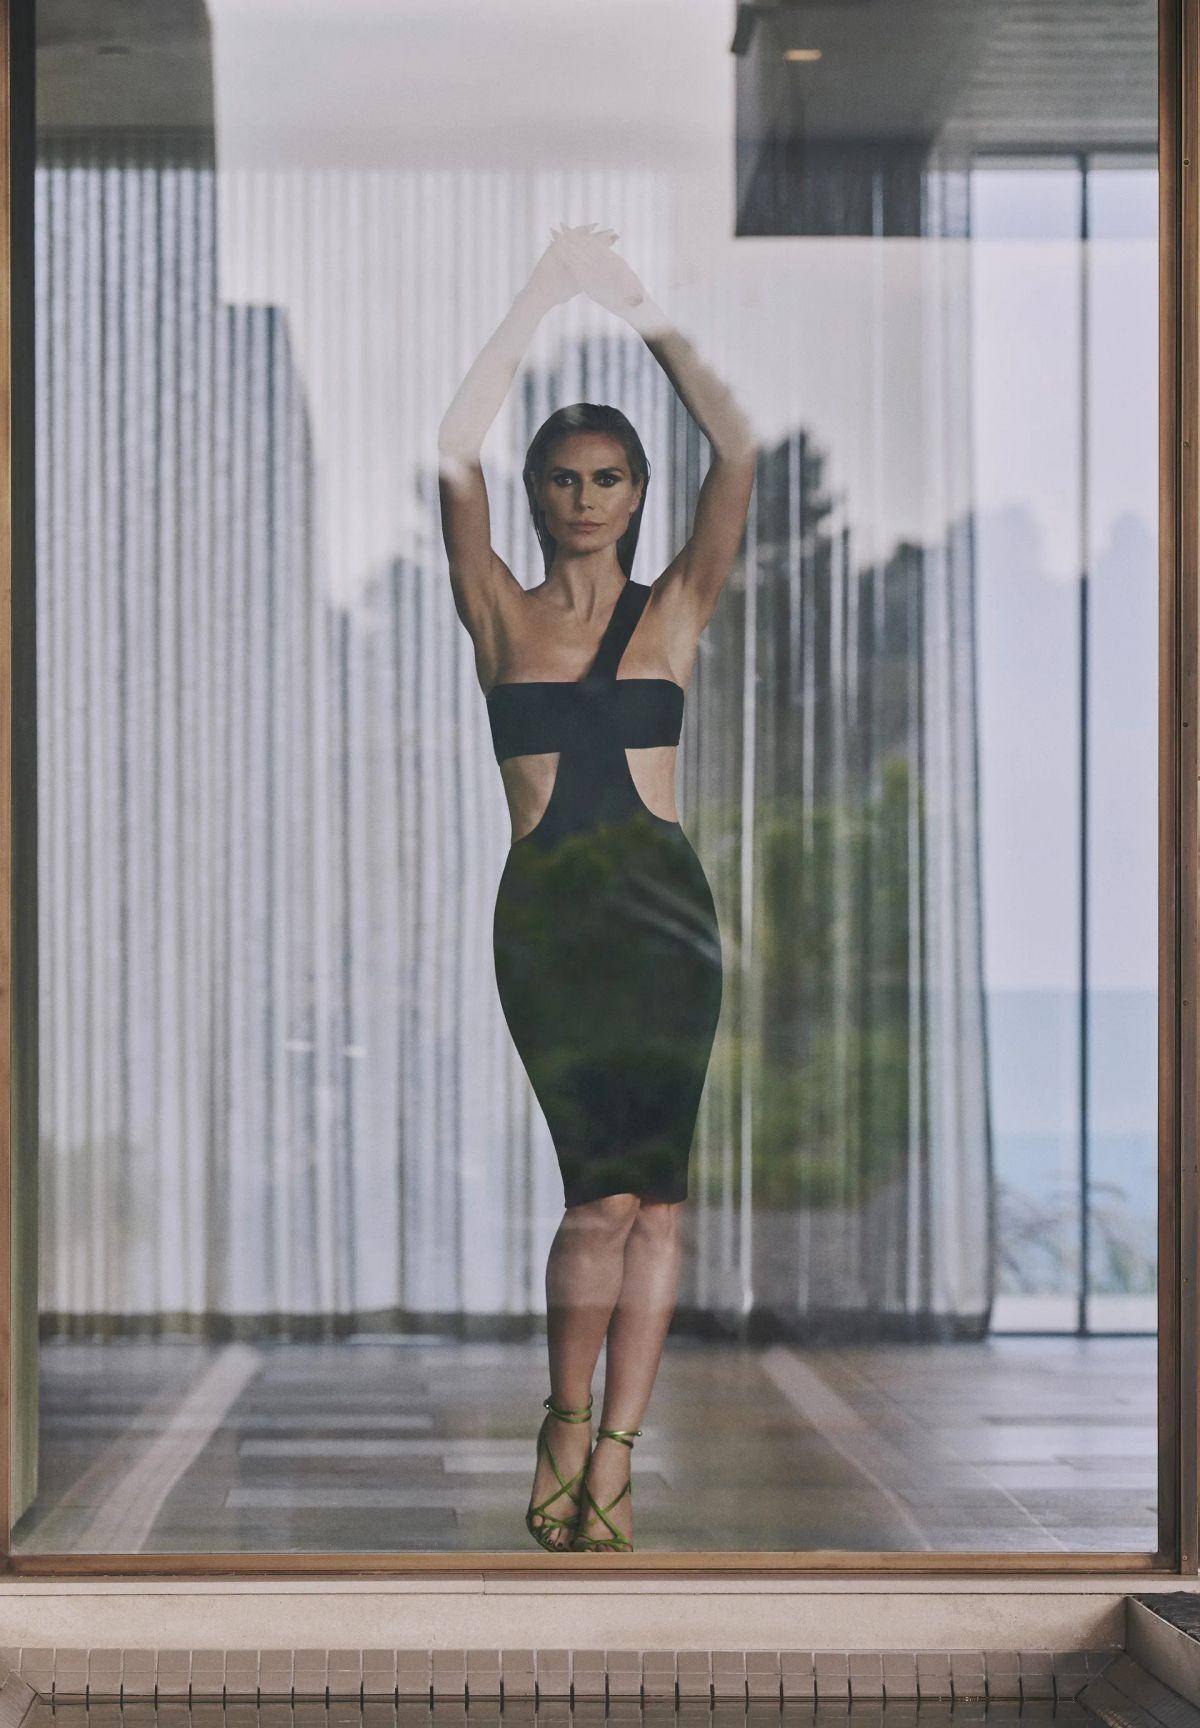 美籍德裔超模海蒂·克鲁姆 (heidi klum),黑色紧身超短裙时装写真秀